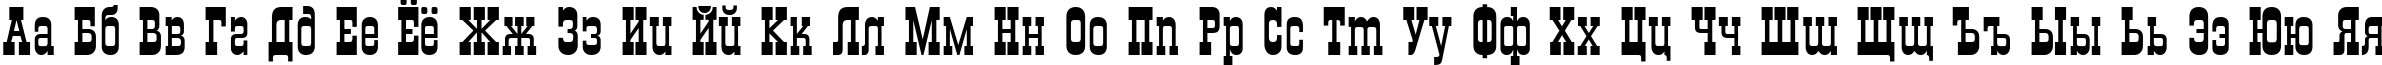 Пример написания русского алфавита шрифтом Grad Plain:001.001